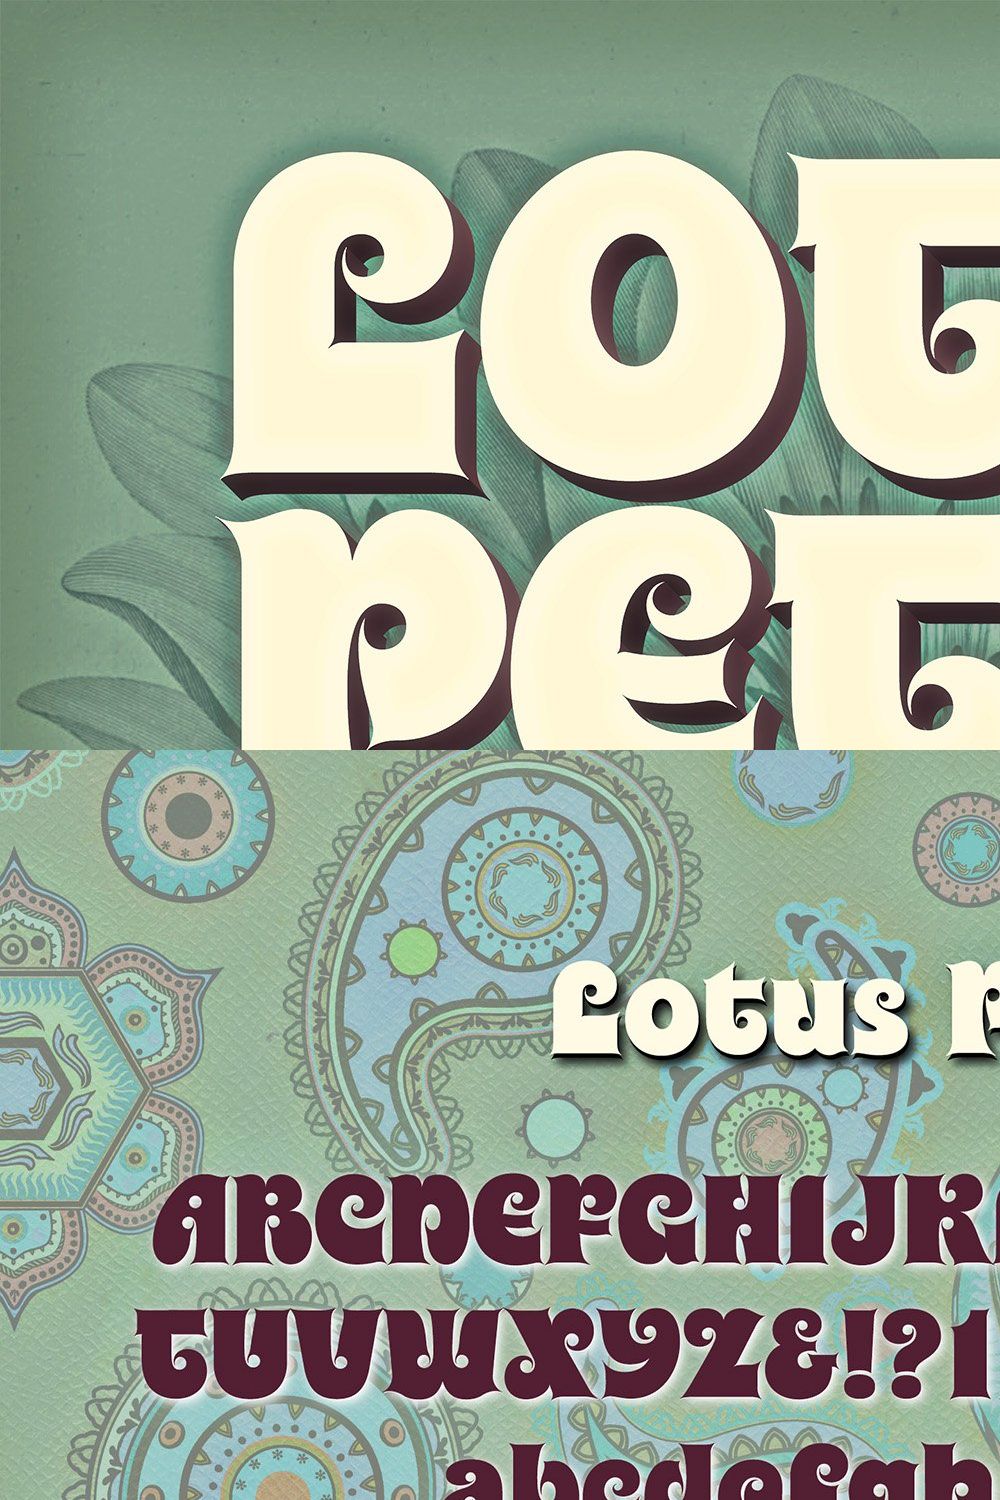 Lotus Petal Font pinterest preview image.